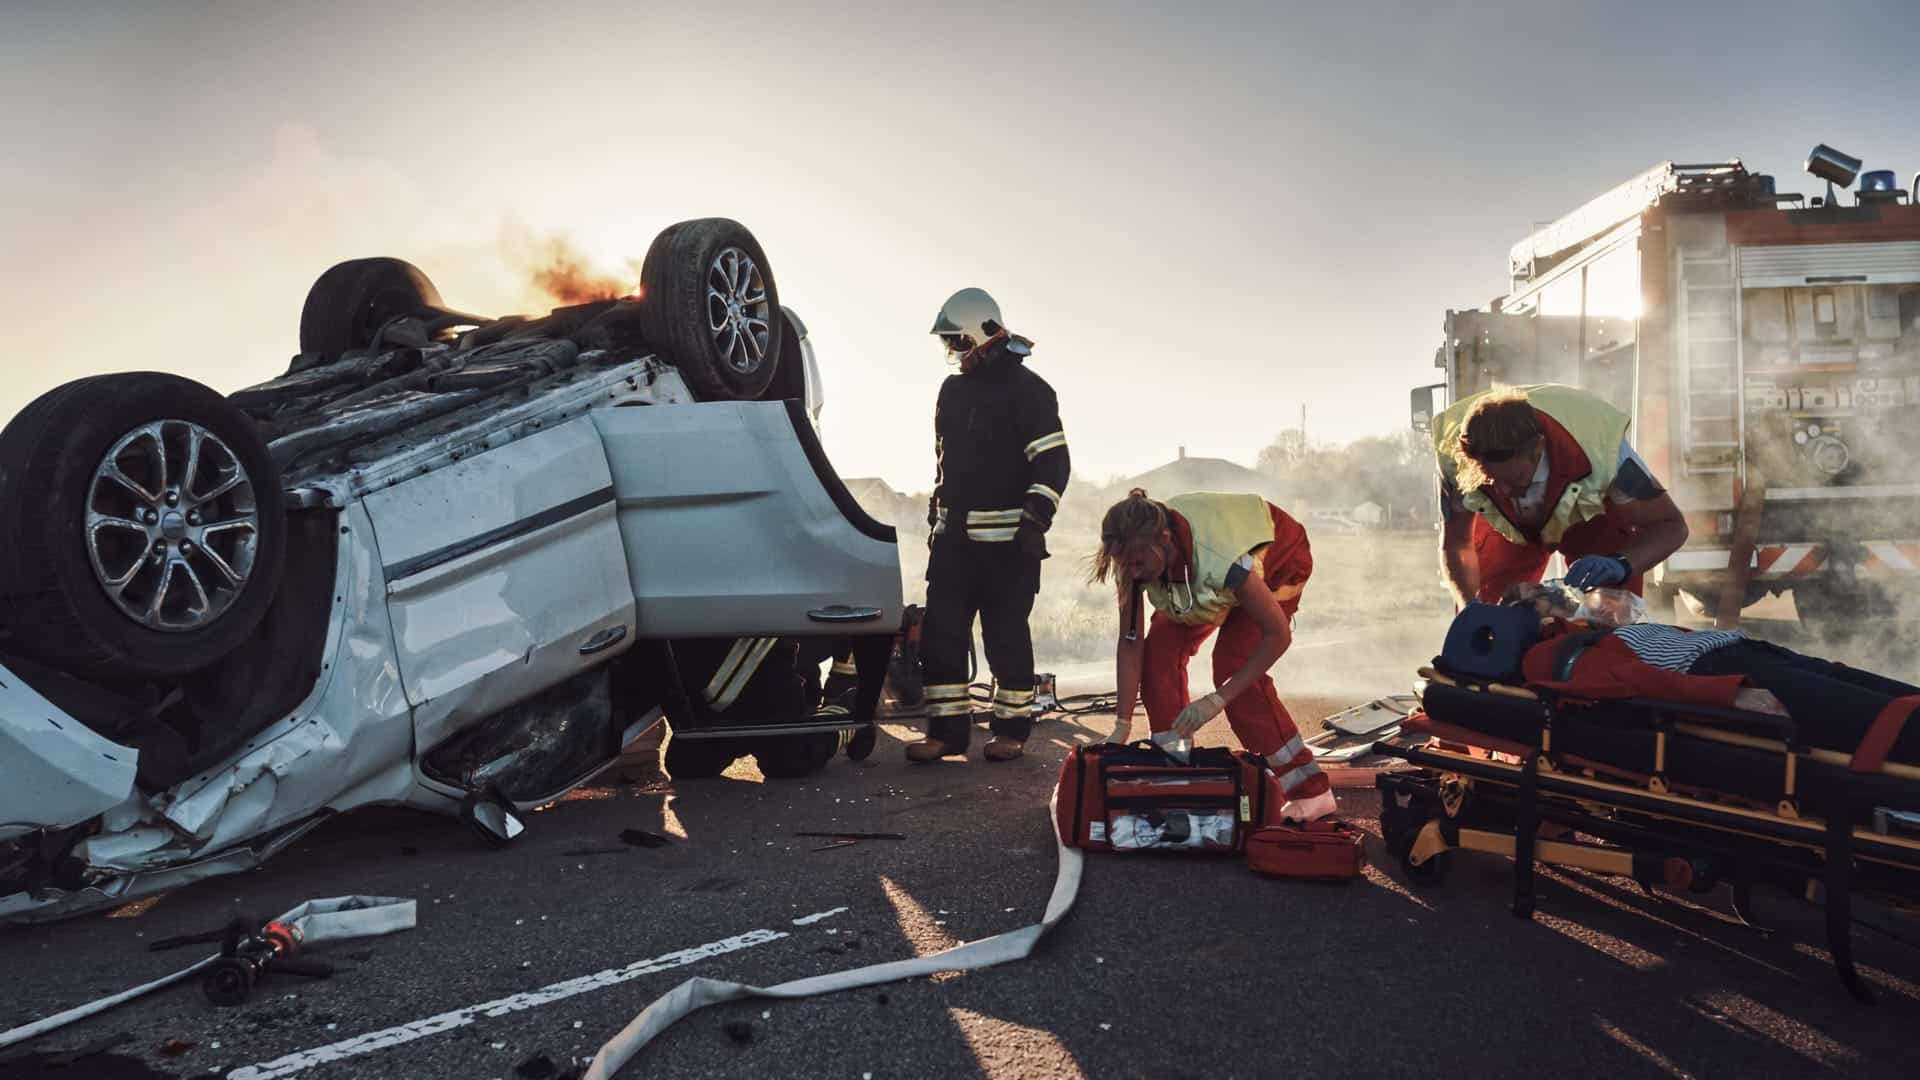 Image Of A Fatal Car Crash